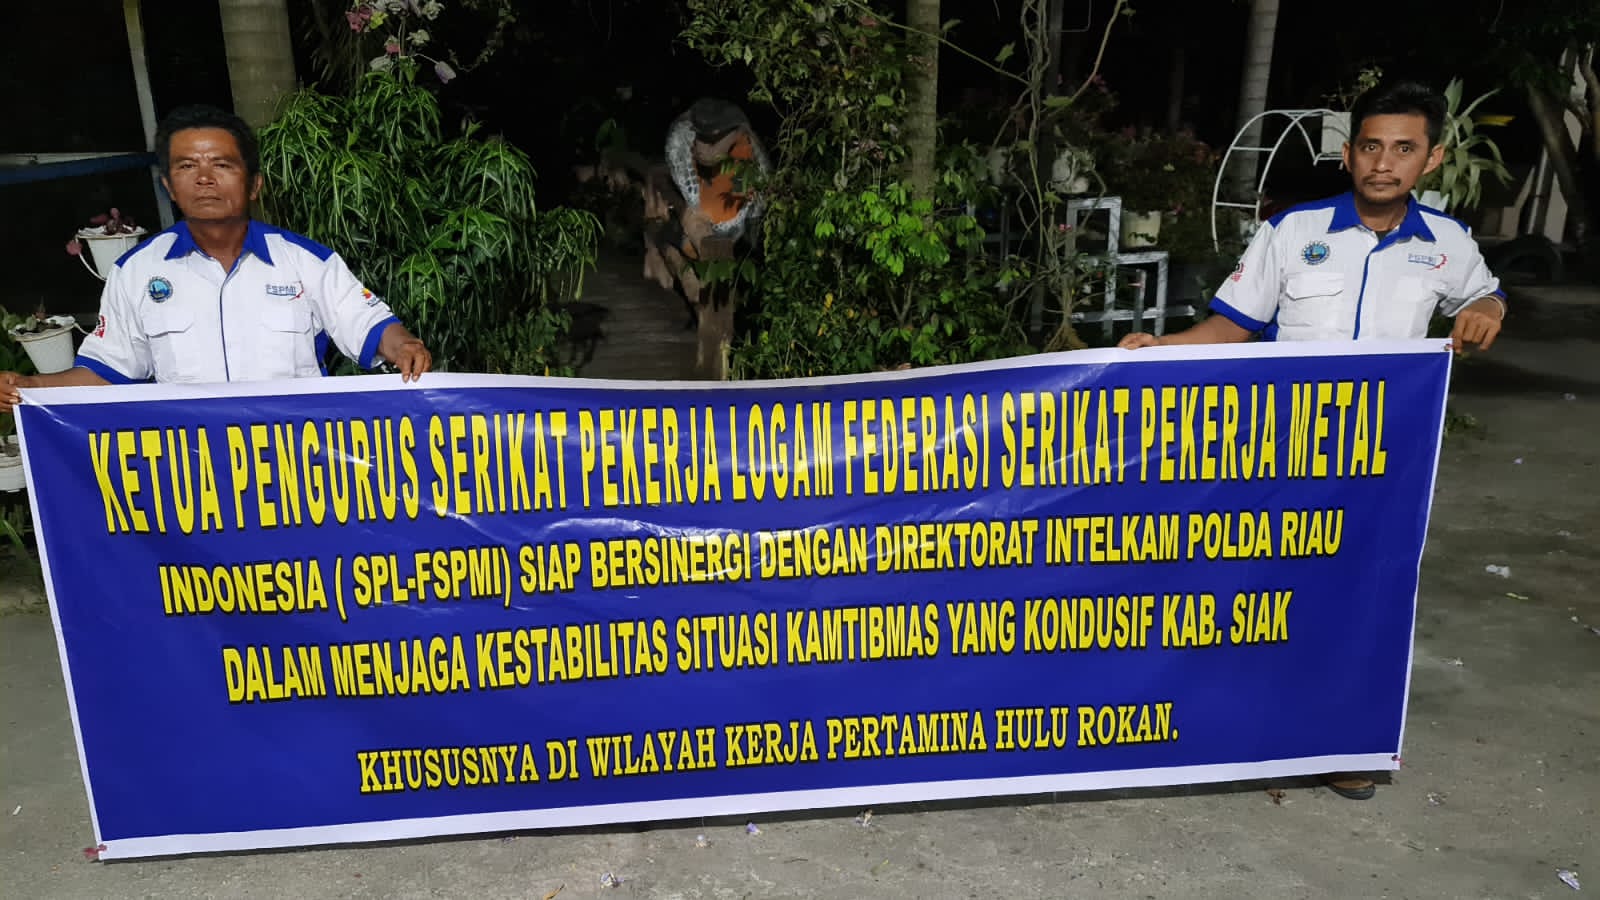 Ketua SPL-FSPMI Siap Bersinergi Dengan Dit Intelkam Polda Riau dan Polres Siak